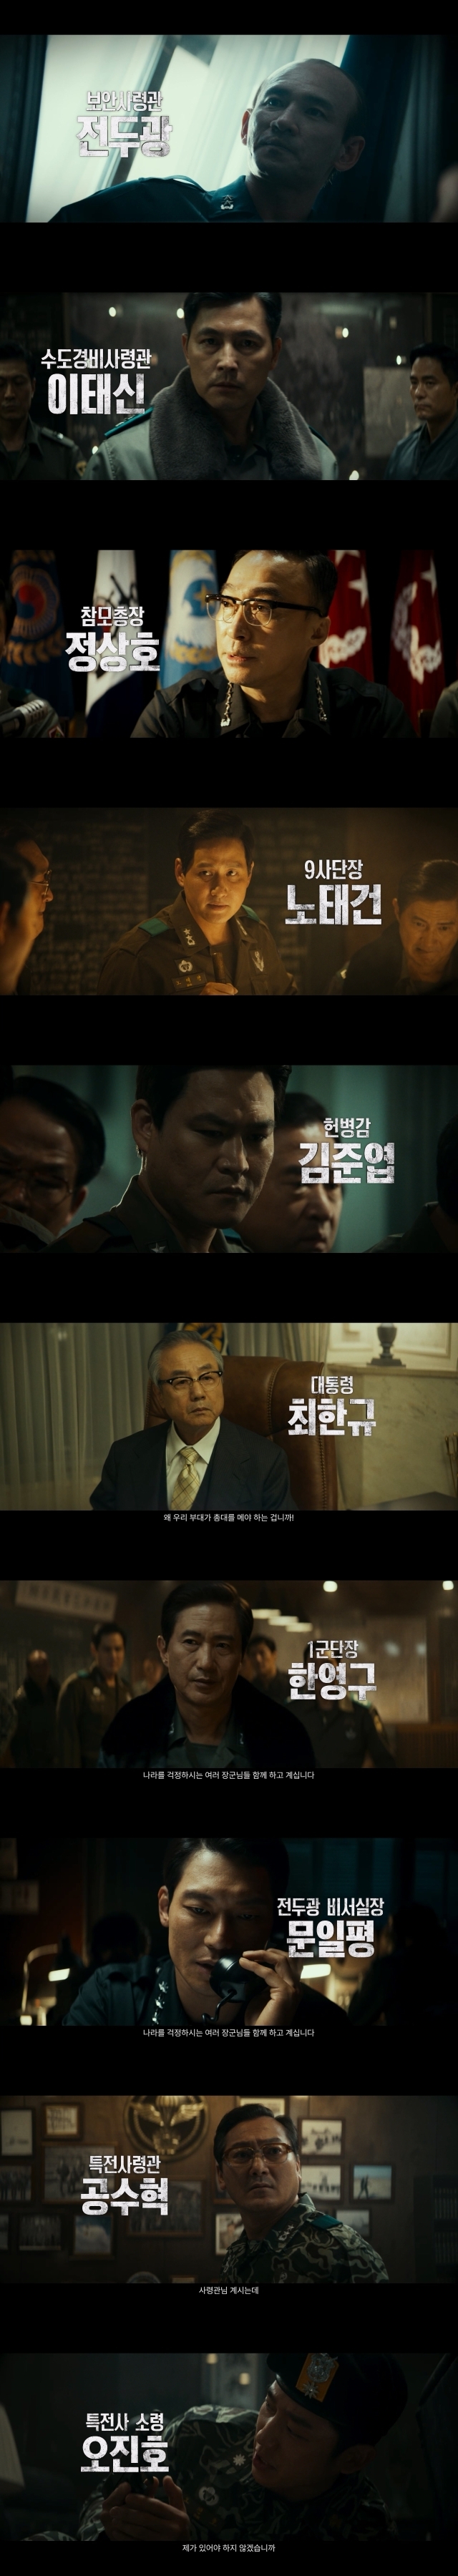 영화 '서울의 봄' 멀티 캐릭터 영상 / 플러스엠 엔터테인먼트